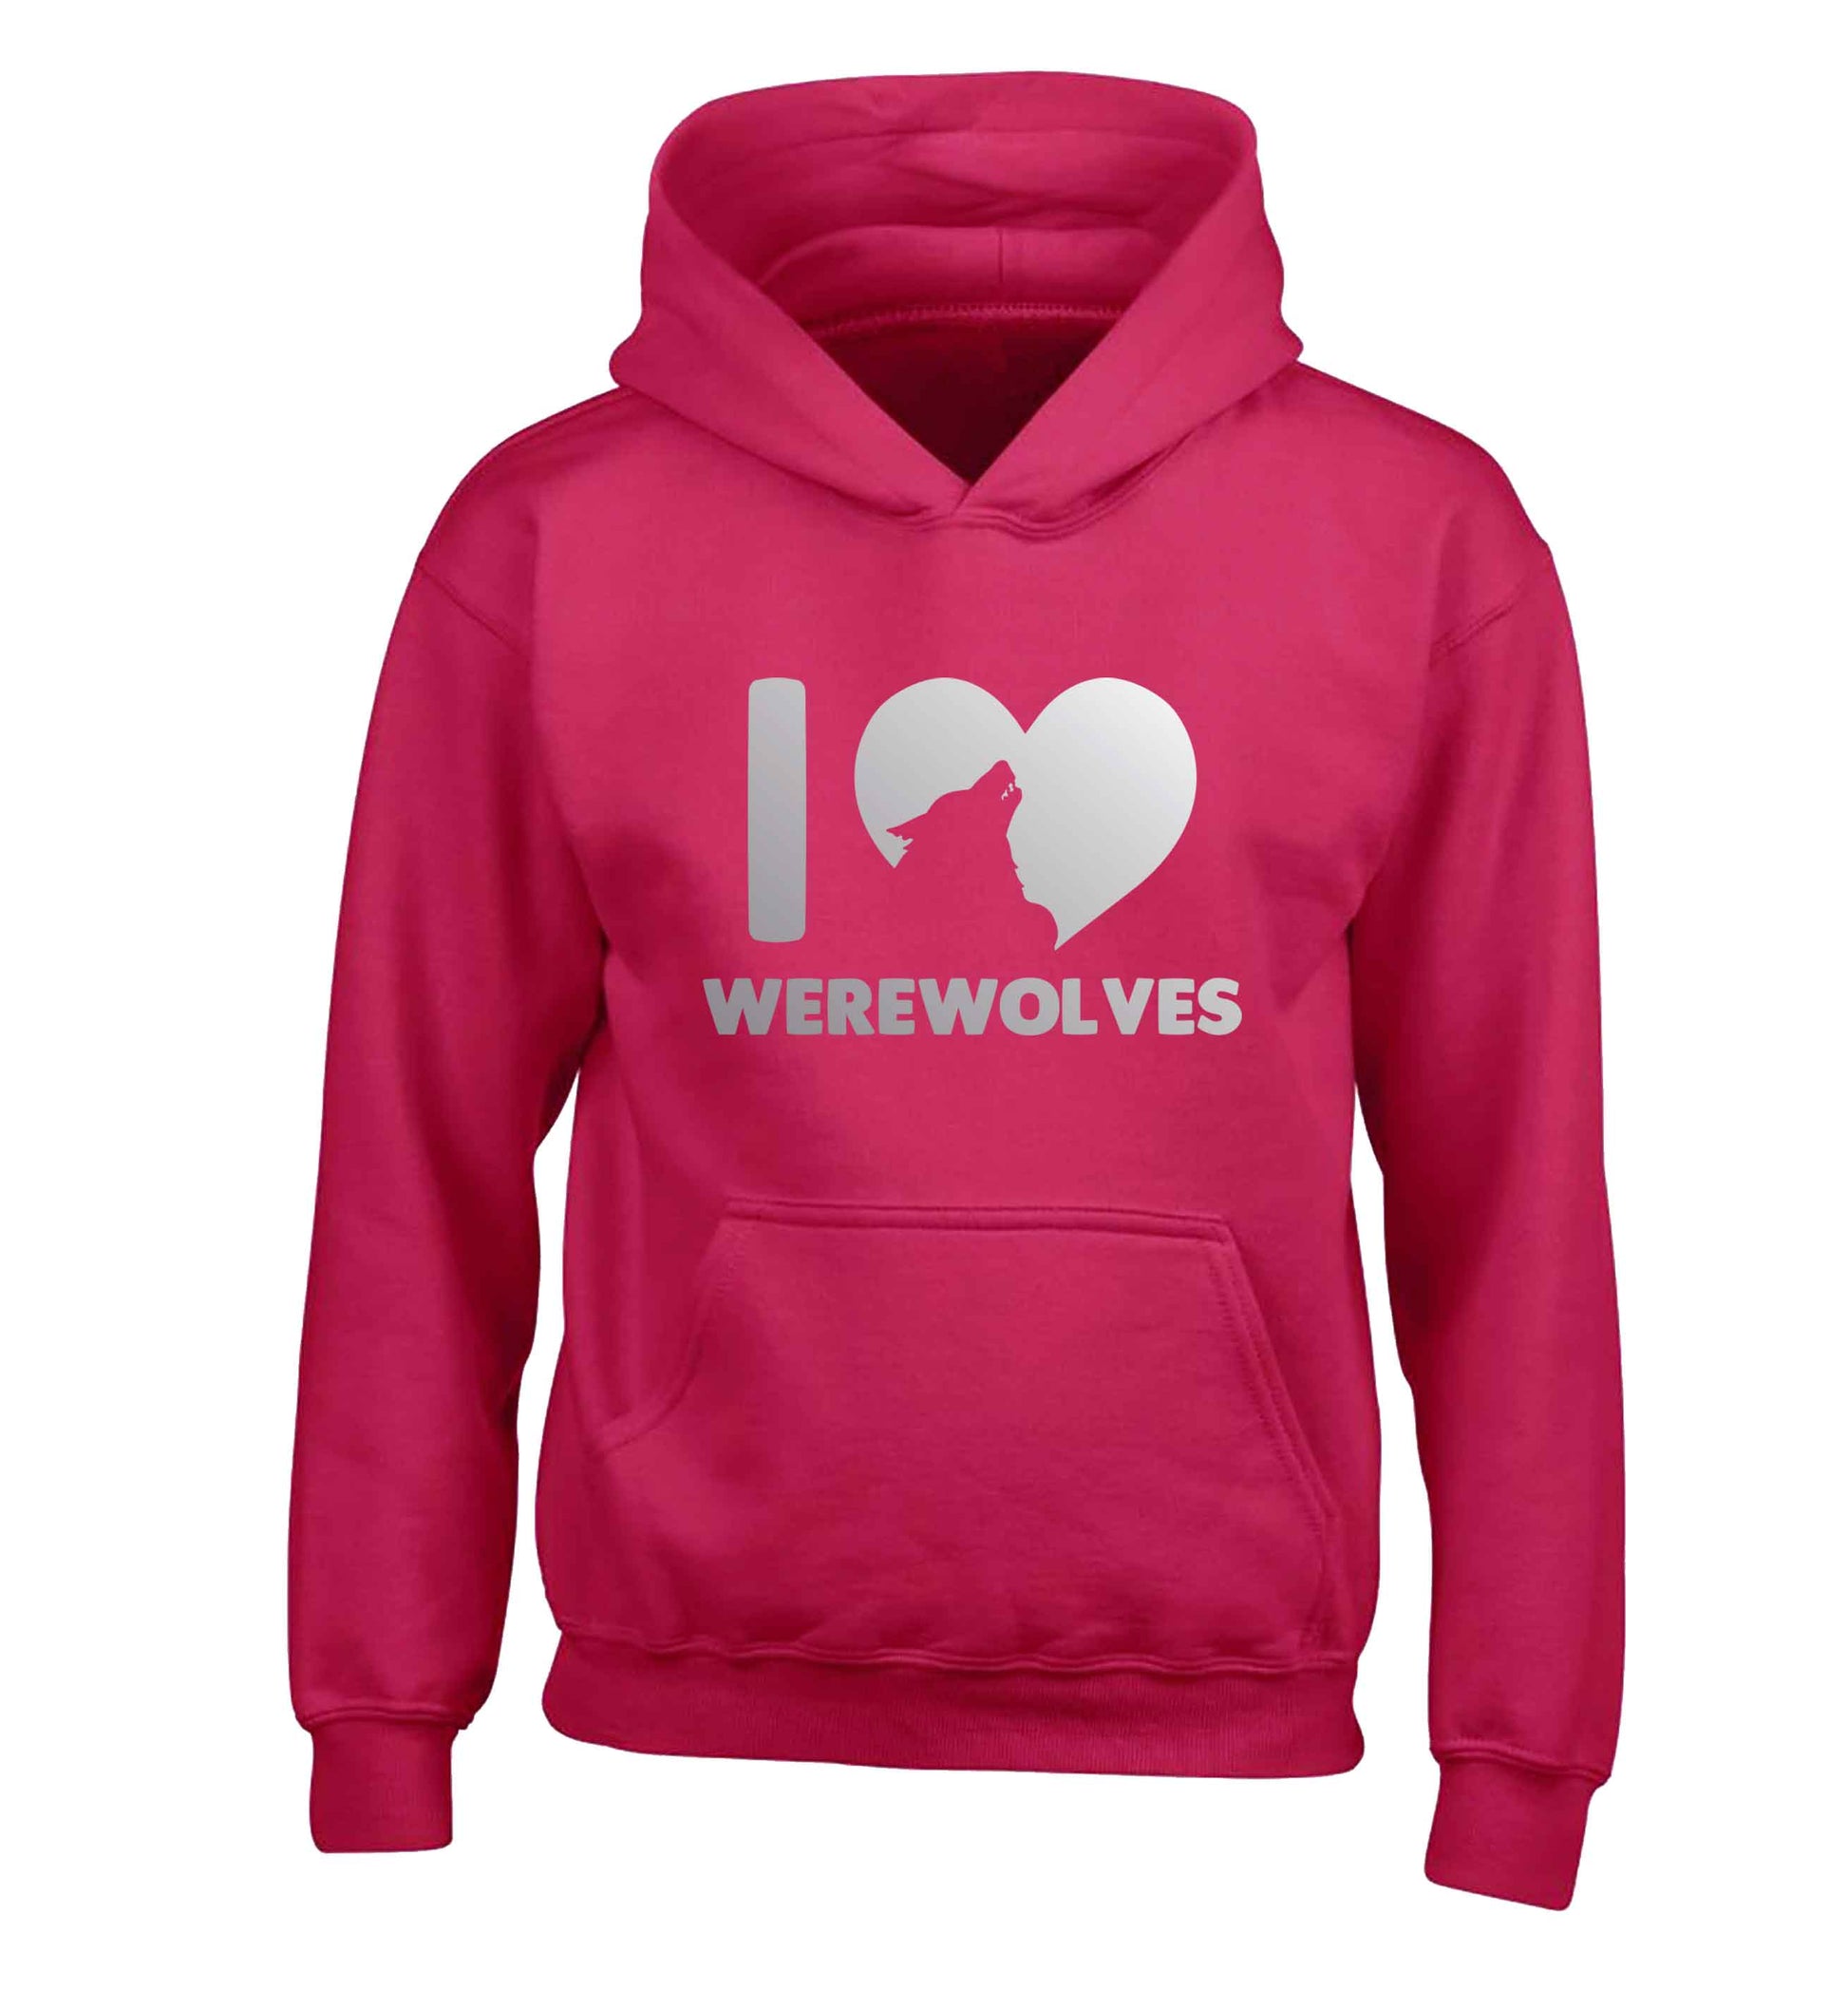 I love werewolves children's pink hoodie 12-13 Years